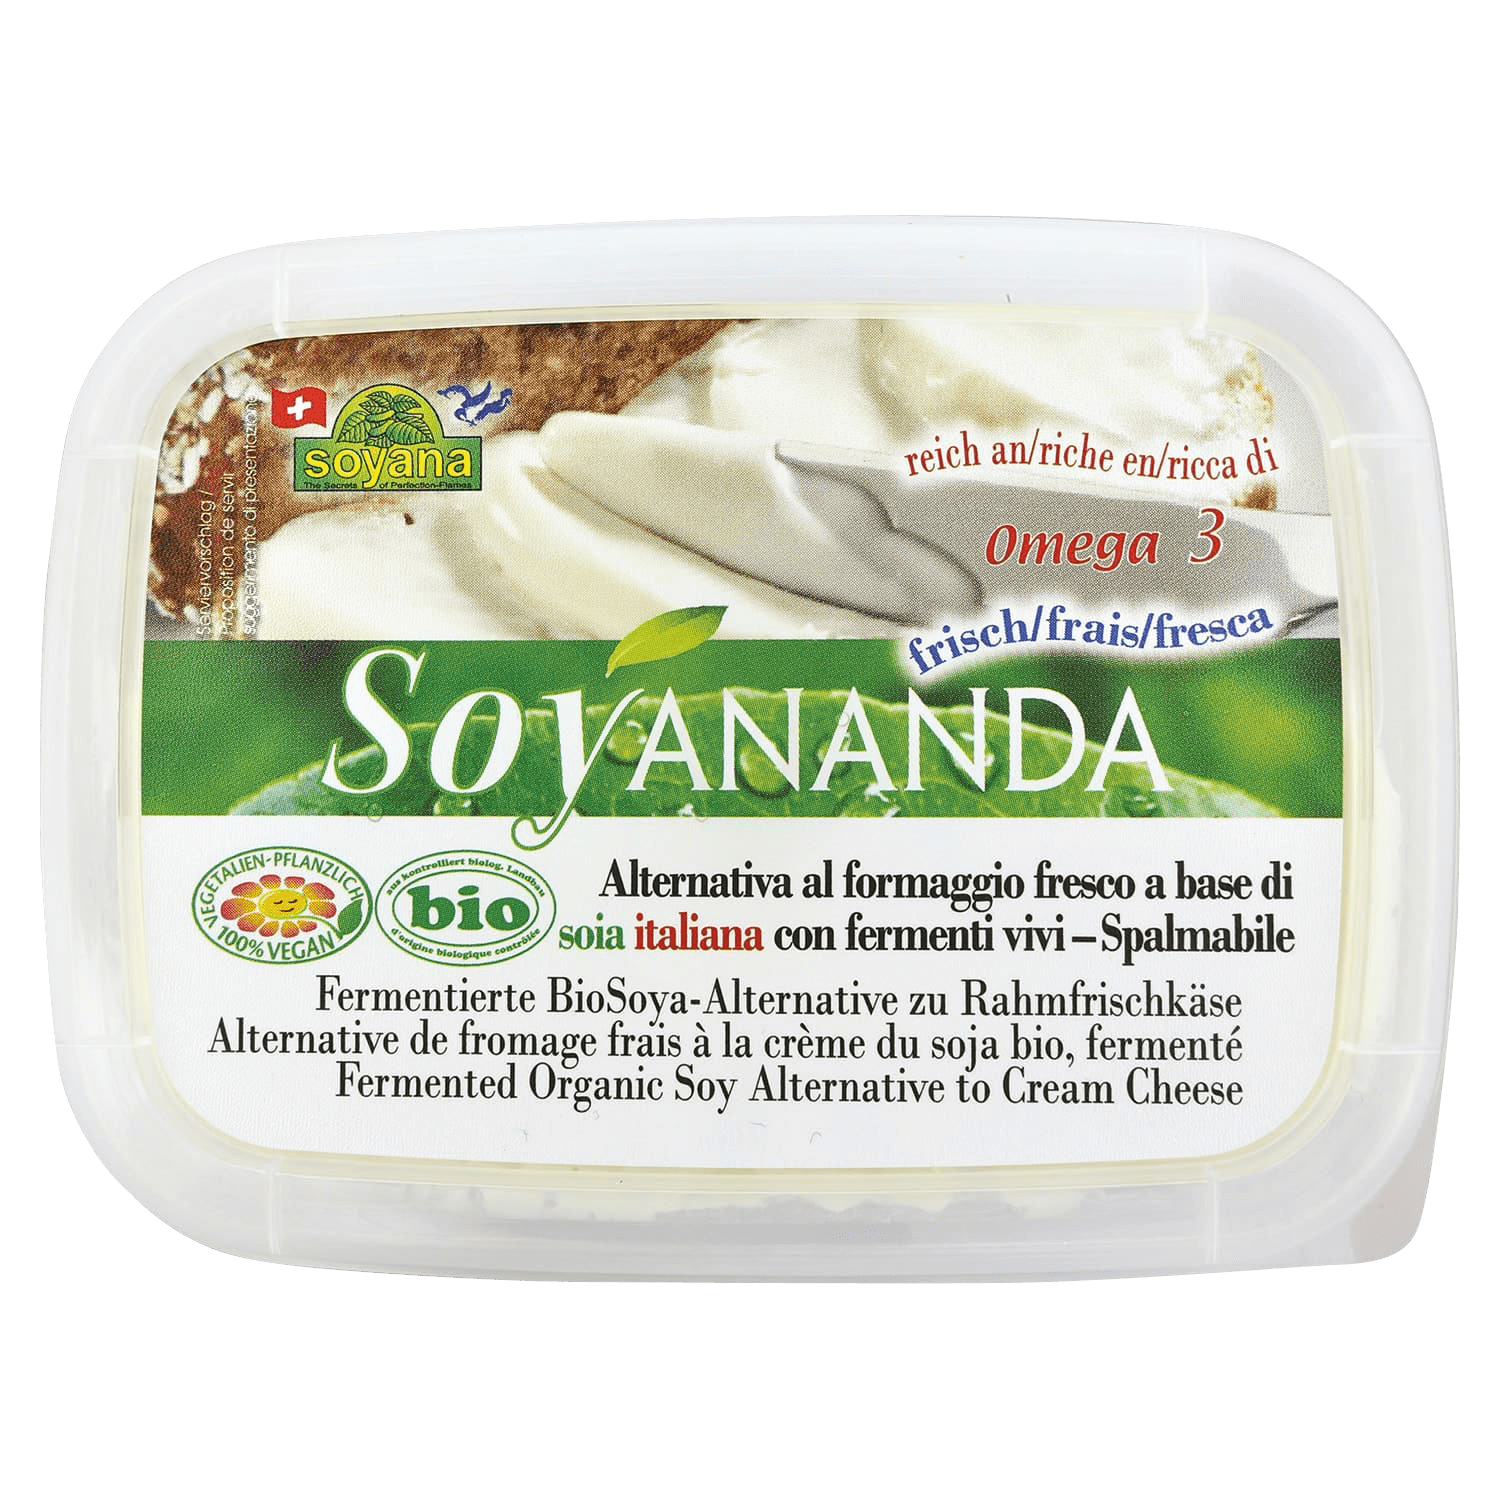 Soyananda Vegane Alternative zu Rahm-Frischkäse, BIO, 140g